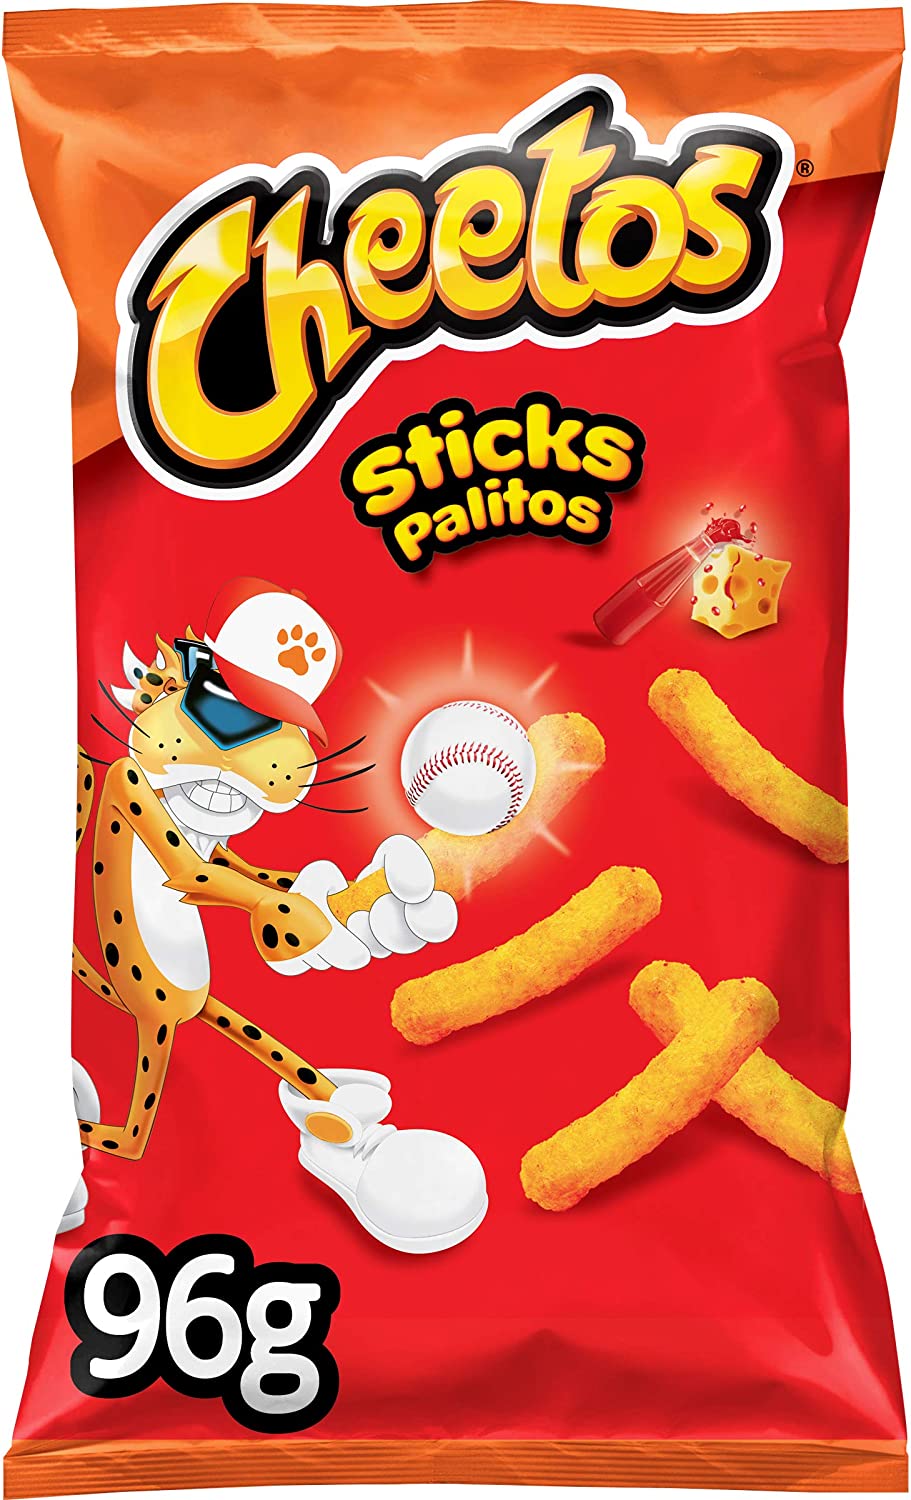 Cheetos Sticks Palitos - Casa de maria